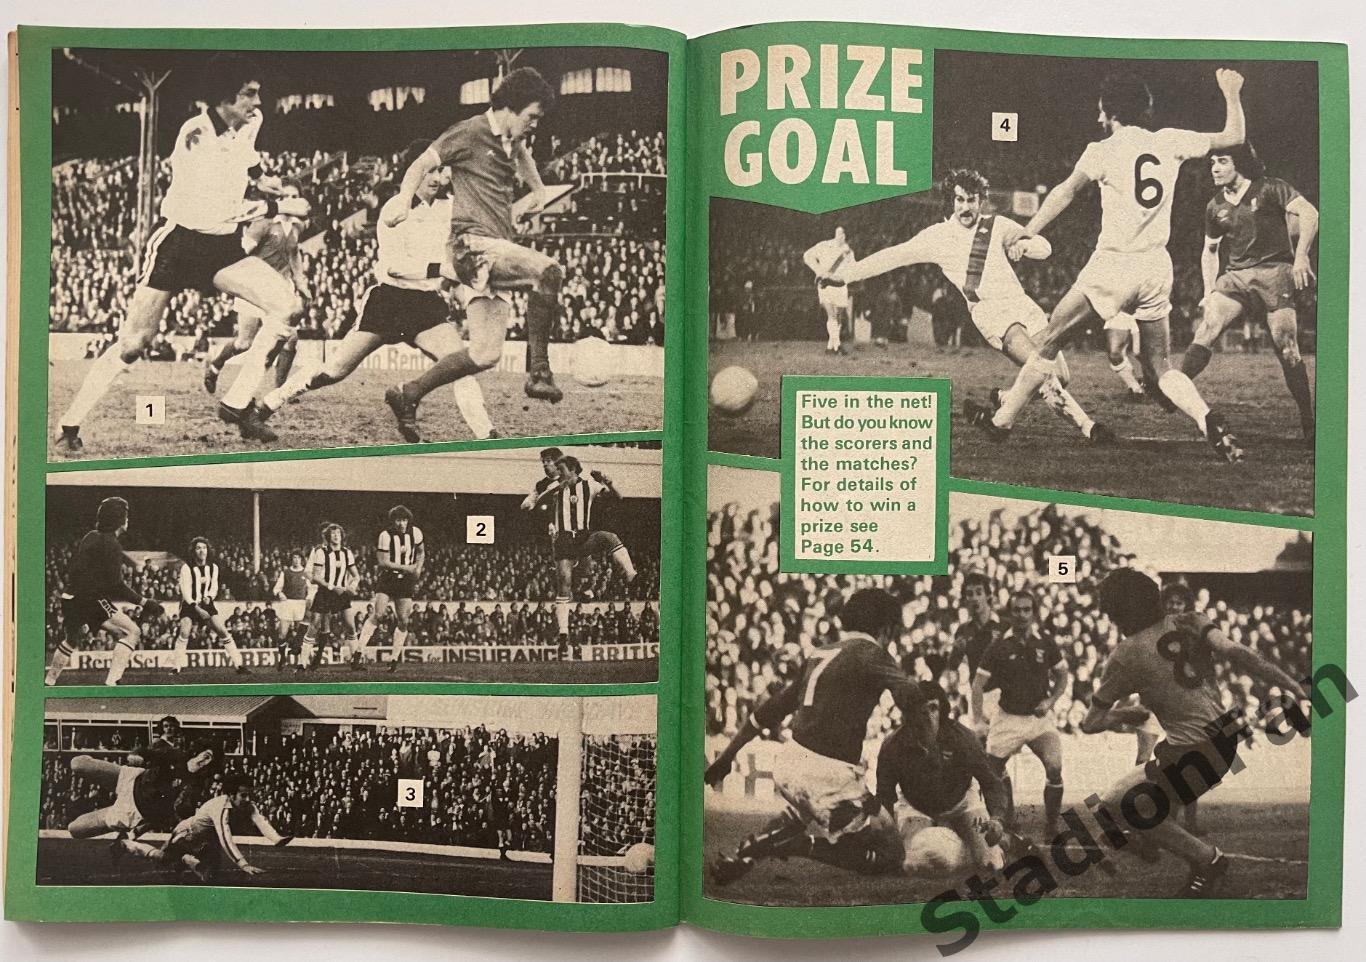 Журнал FOOTBALL - 1977 год, октябрь. 4